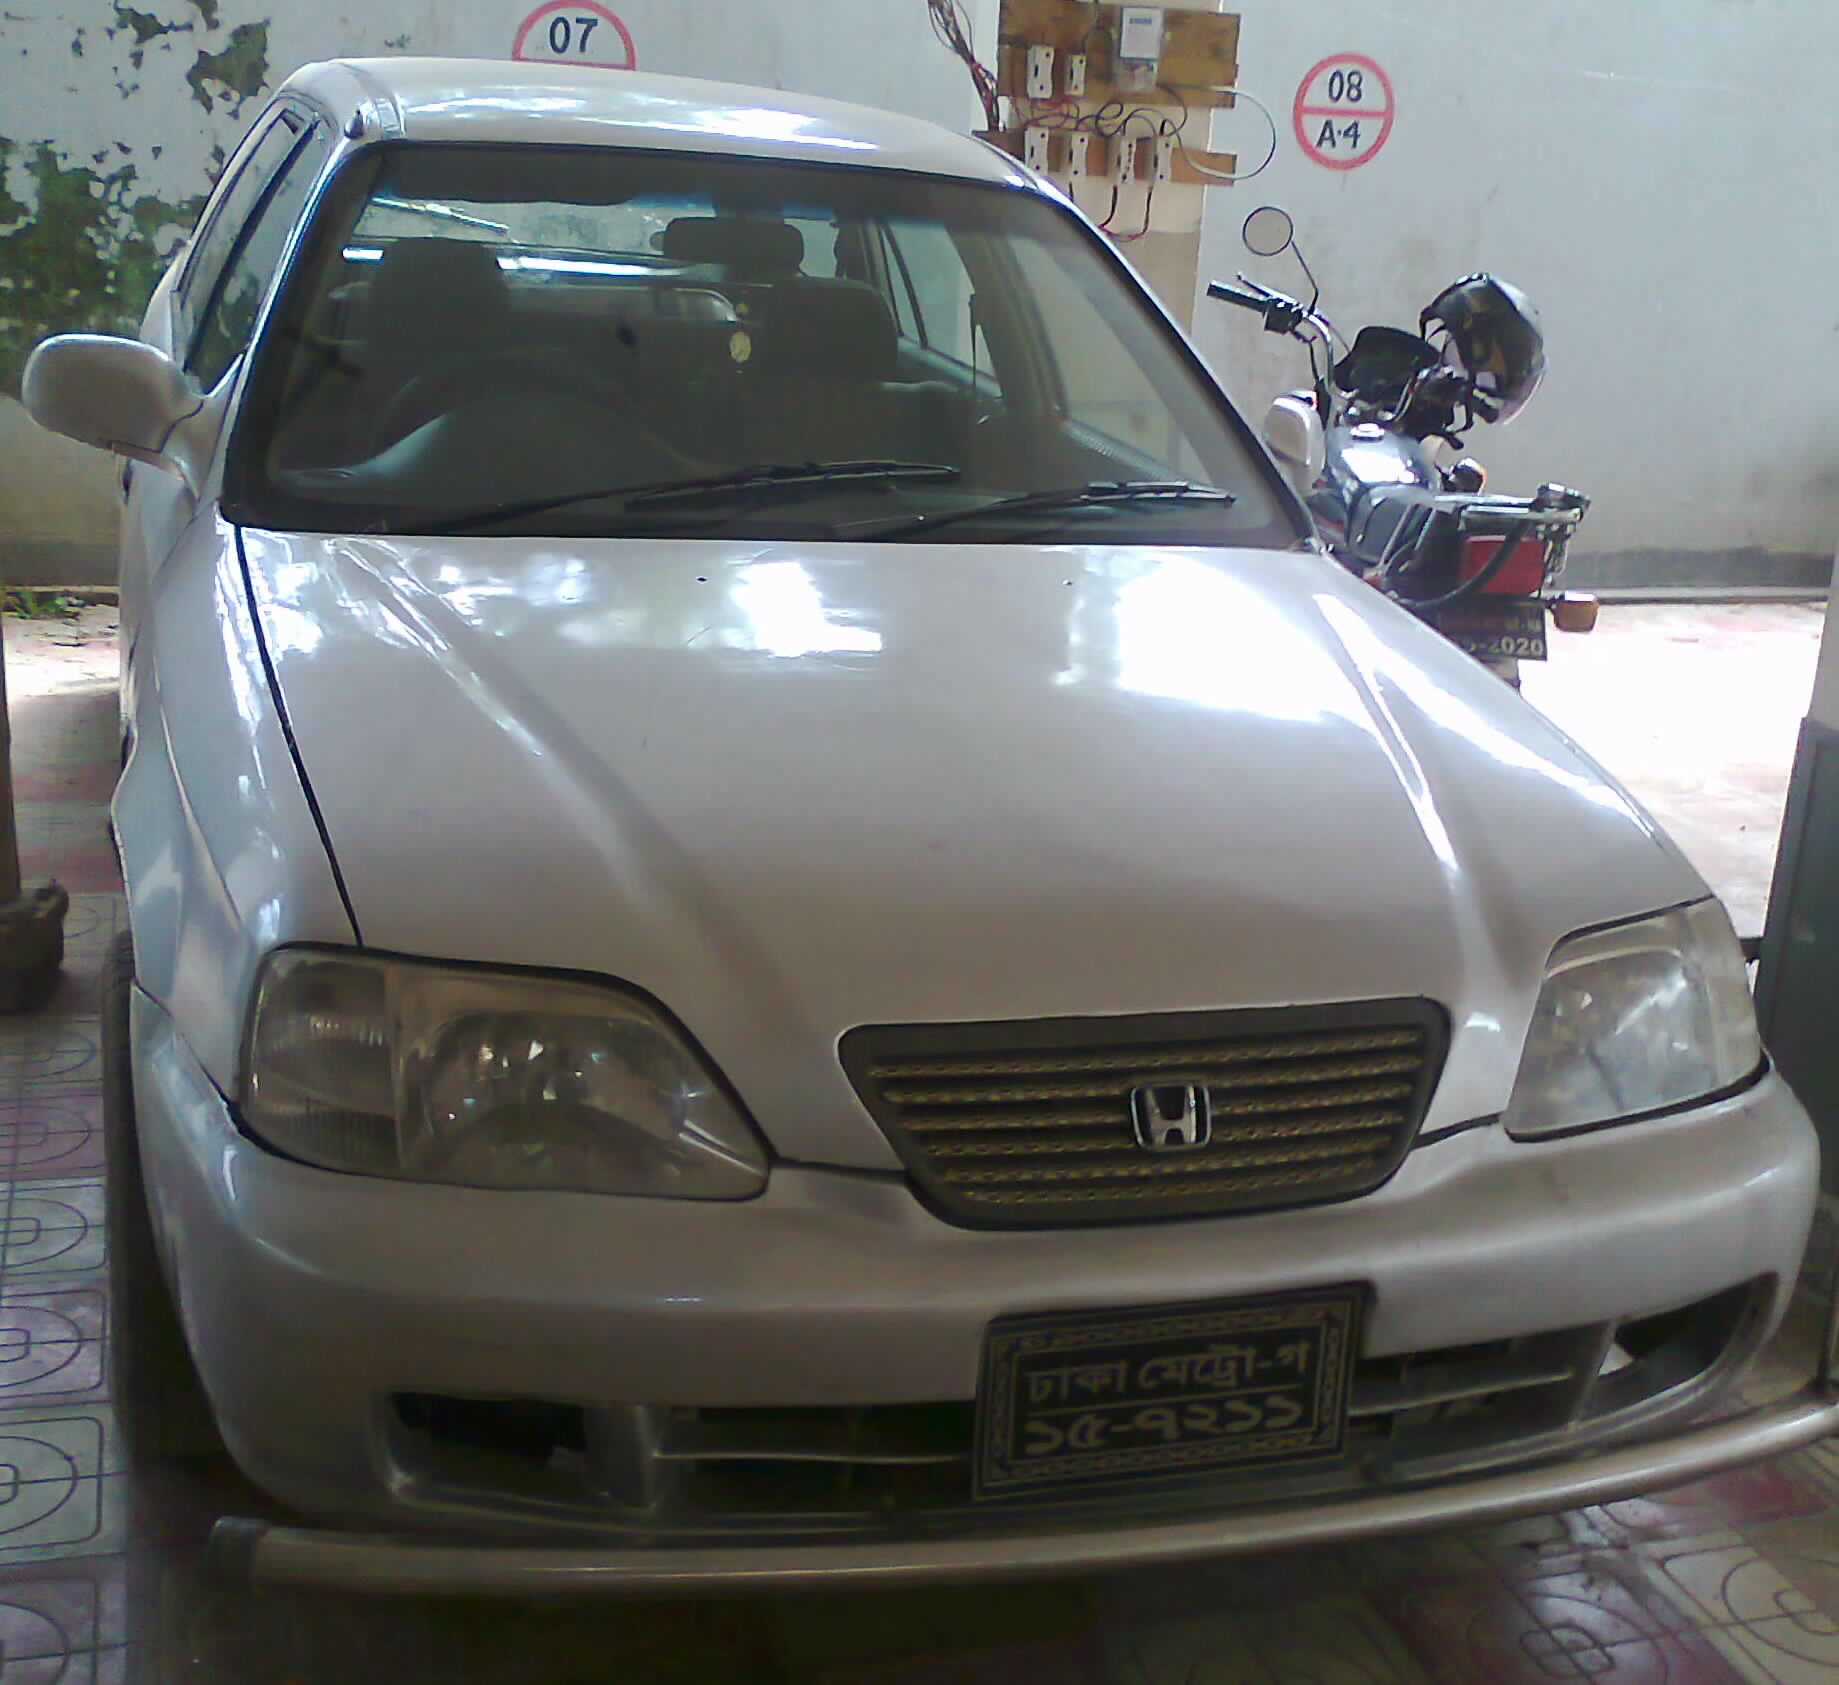 Honda State Wagon 2003. Call Urgently 0181821300 large image 0